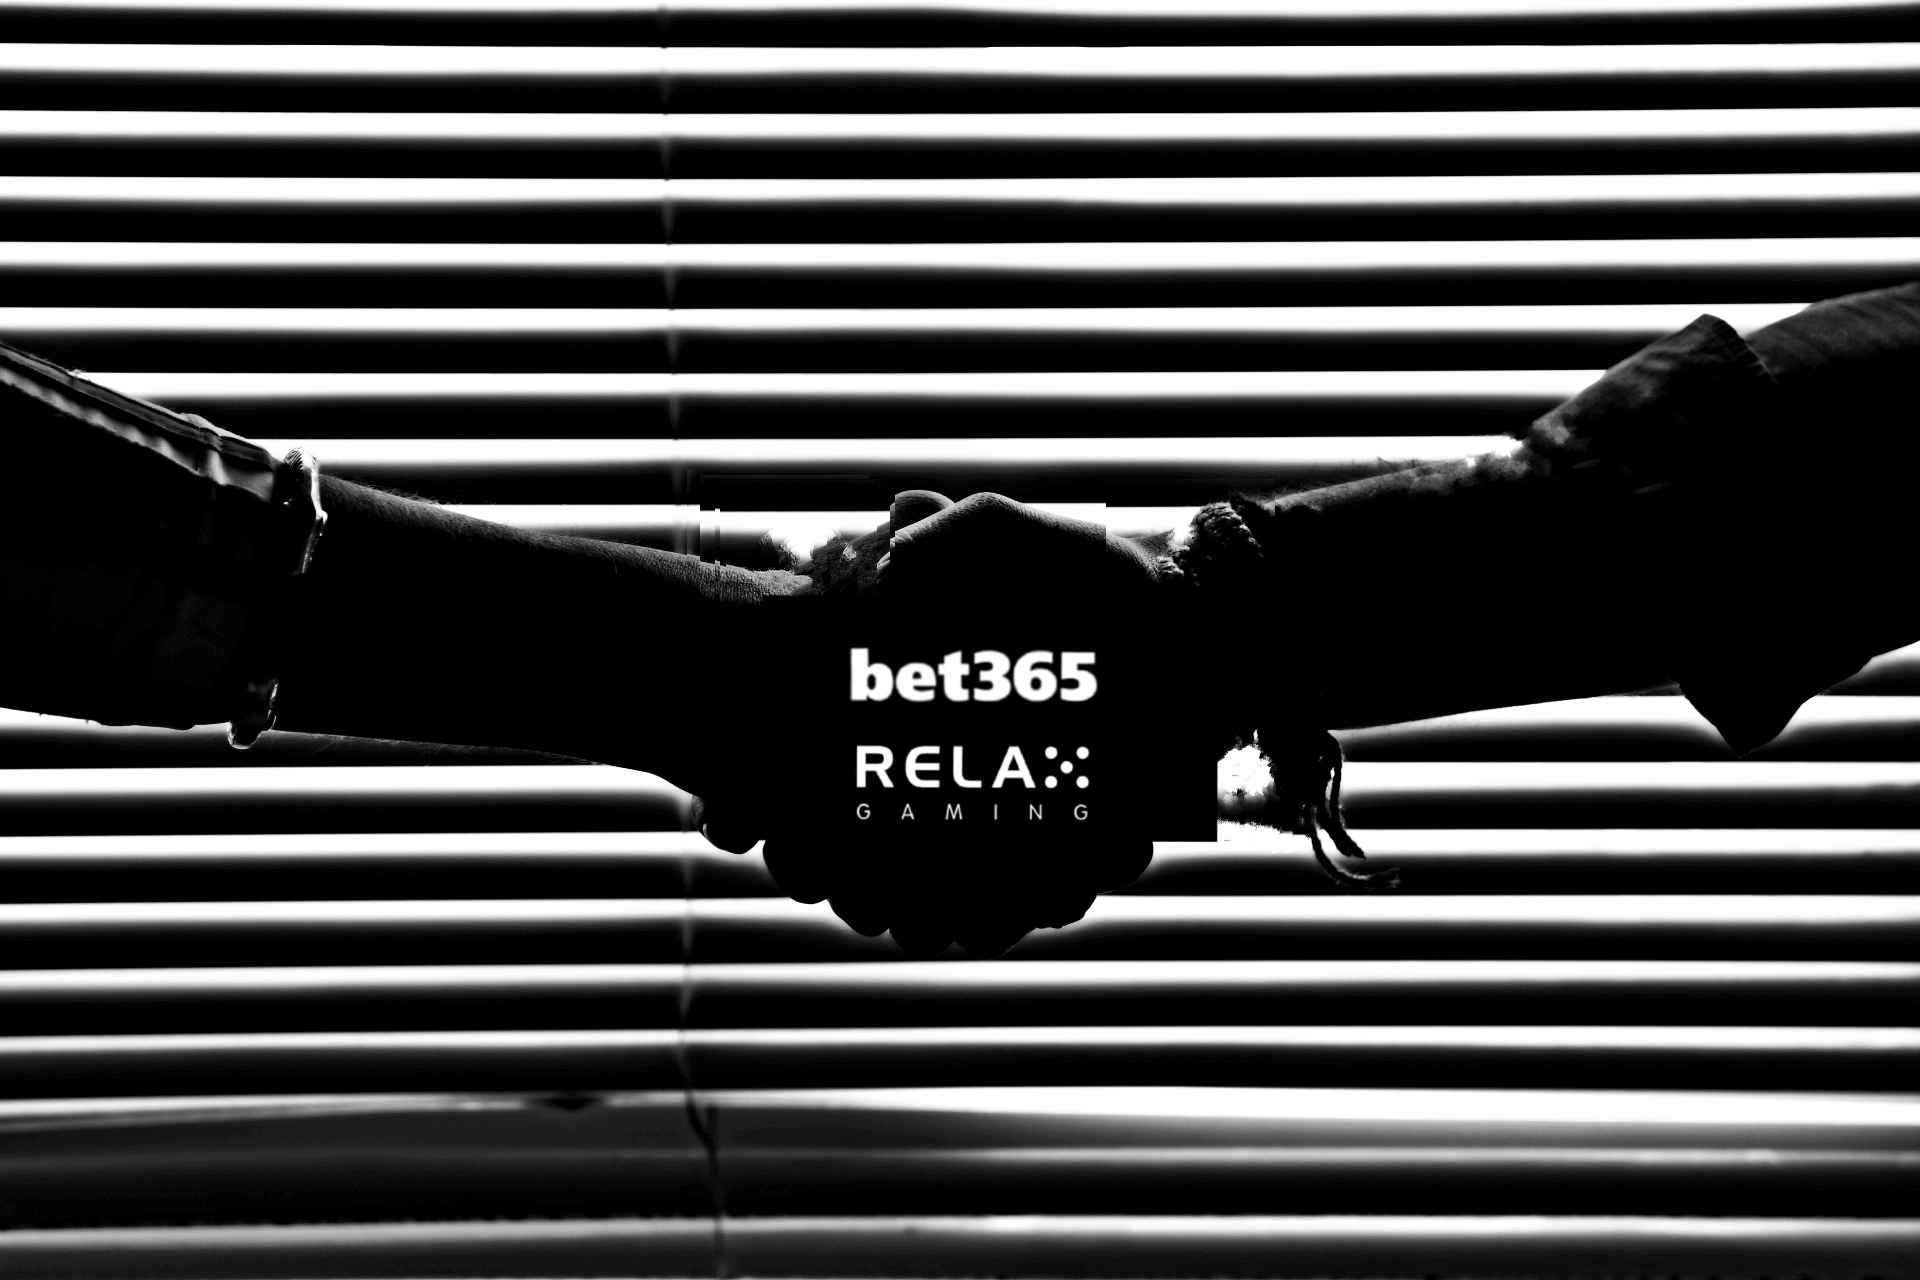 Η Relax Gaming και η bet365 ενώνουν τις δυνάμεις τους.